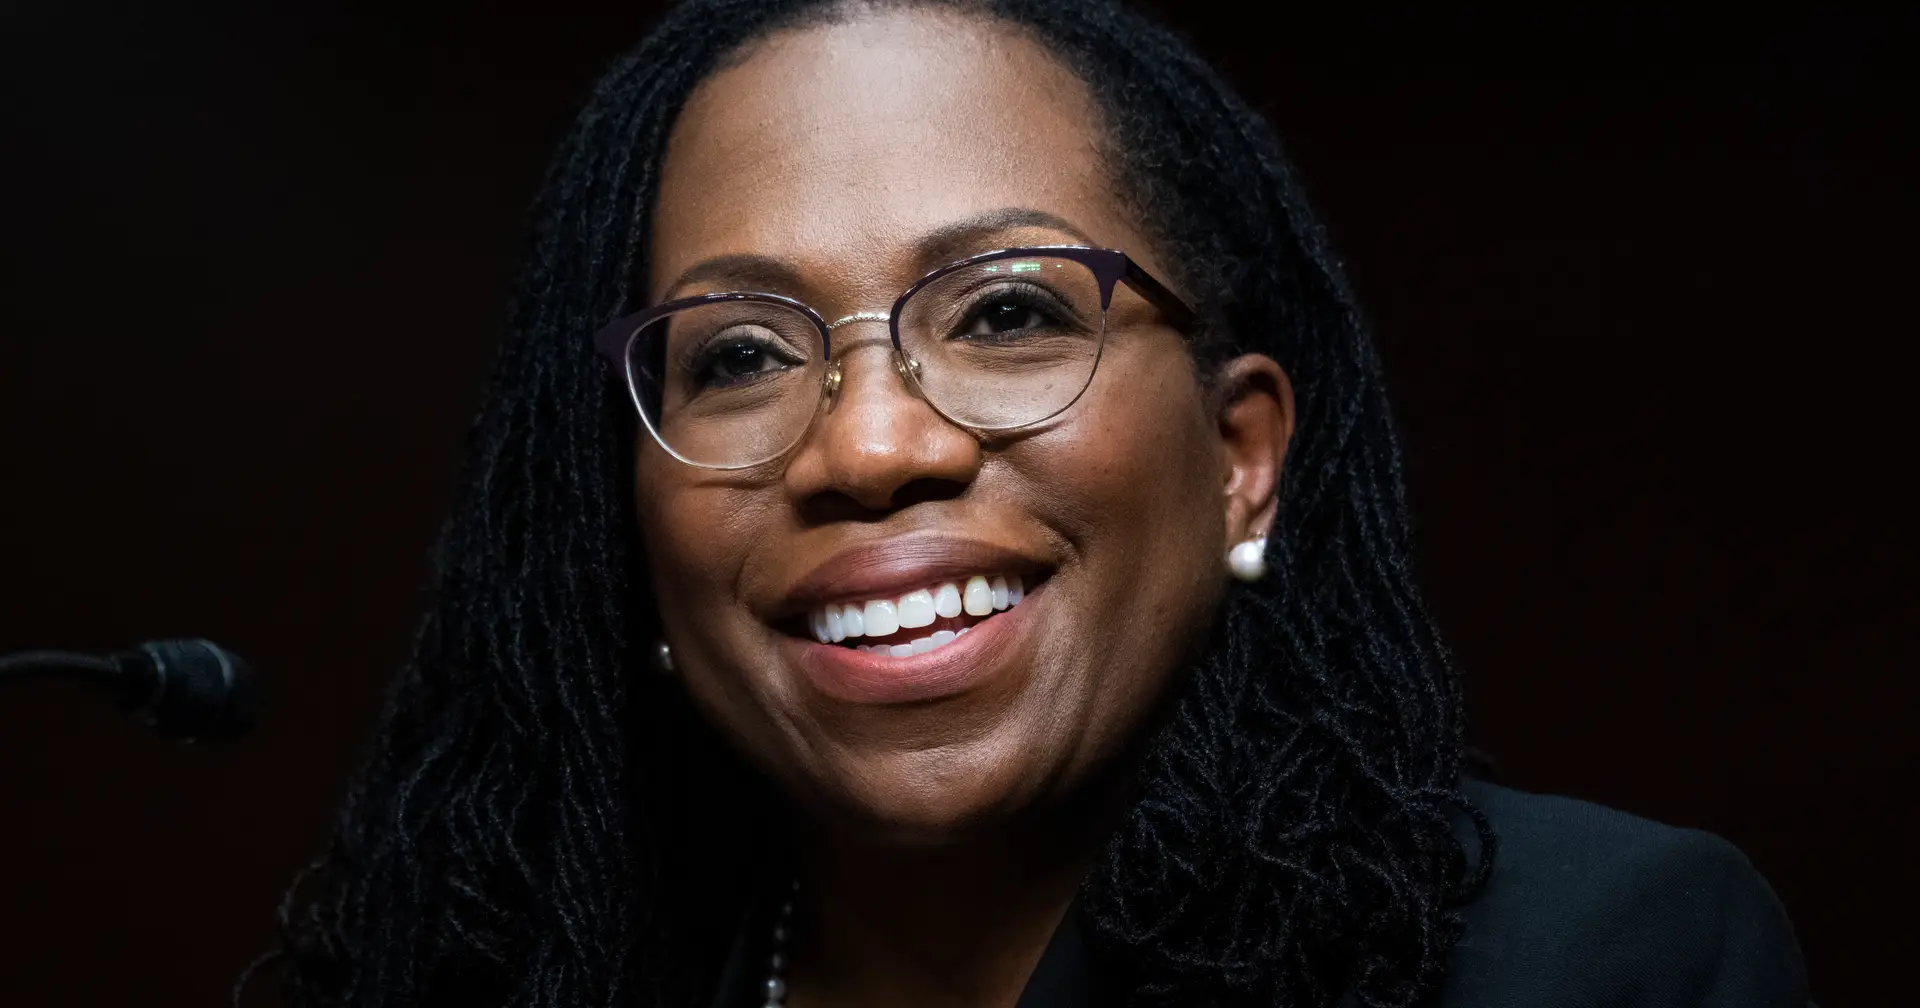 Senado confirma Ketanji Brown Jackson, a primeira juíza negra no Supremo Tribunal dos EUA